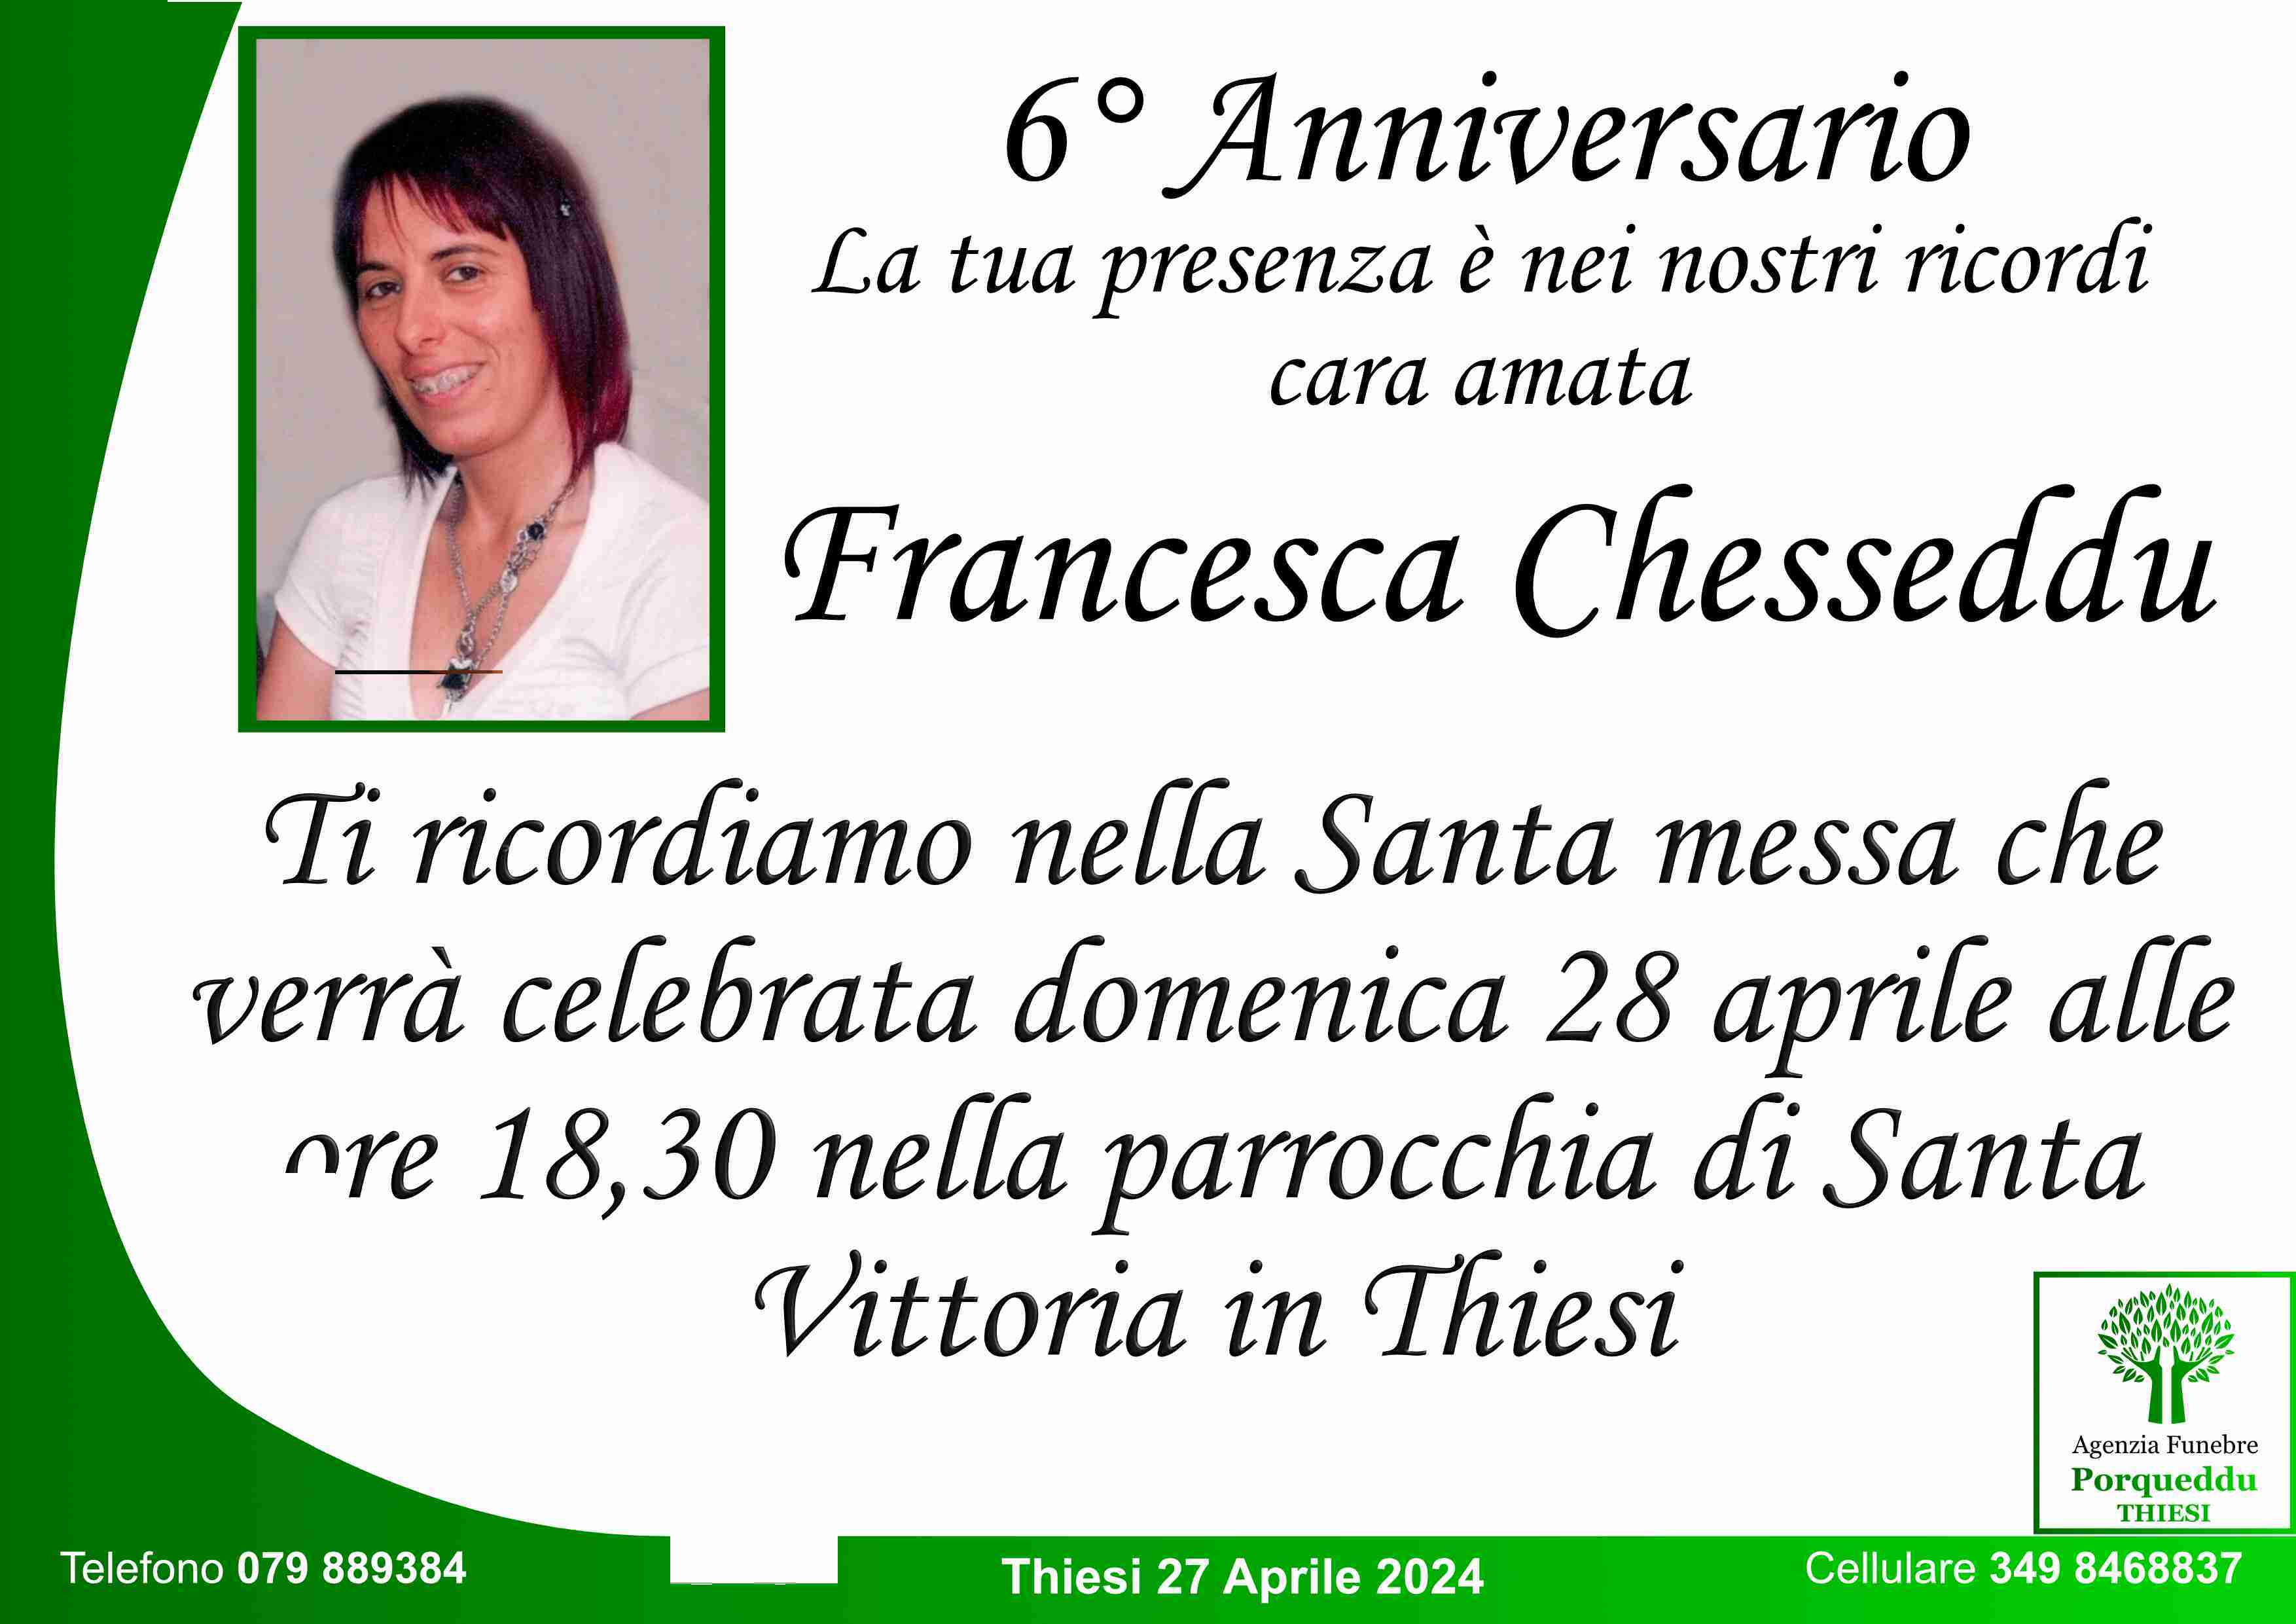 Chesseddu Francesca